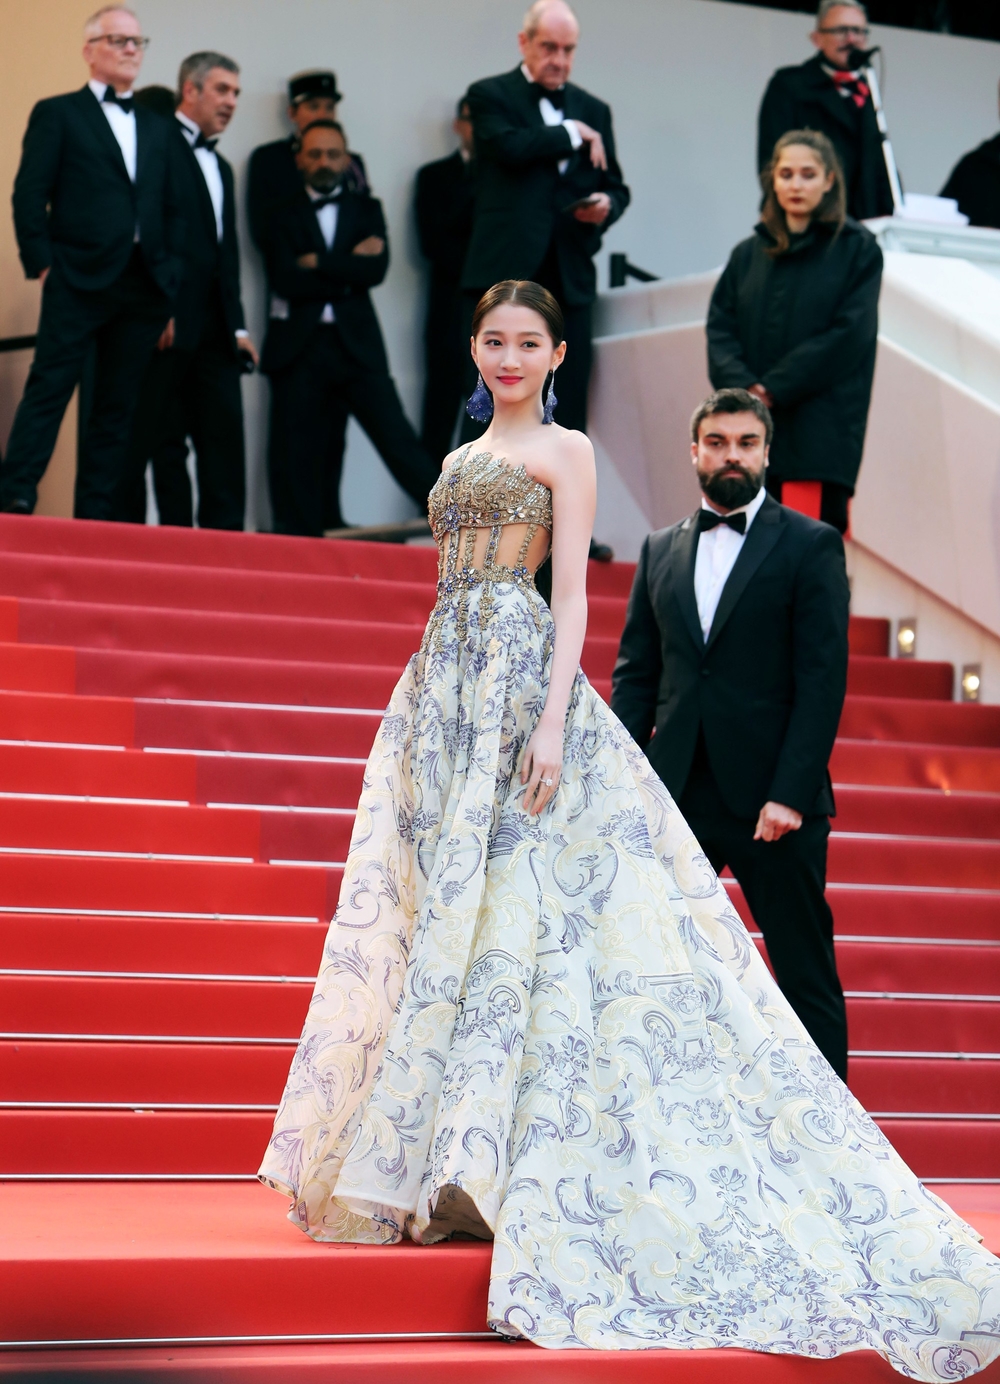  
Quan Hiểu Đồng khiến ai nấy đều phải trầm trồ trước nhan sắc xinh đẹp cùng bộ đầm lộng lẫy mà cô diện tới Cannes.